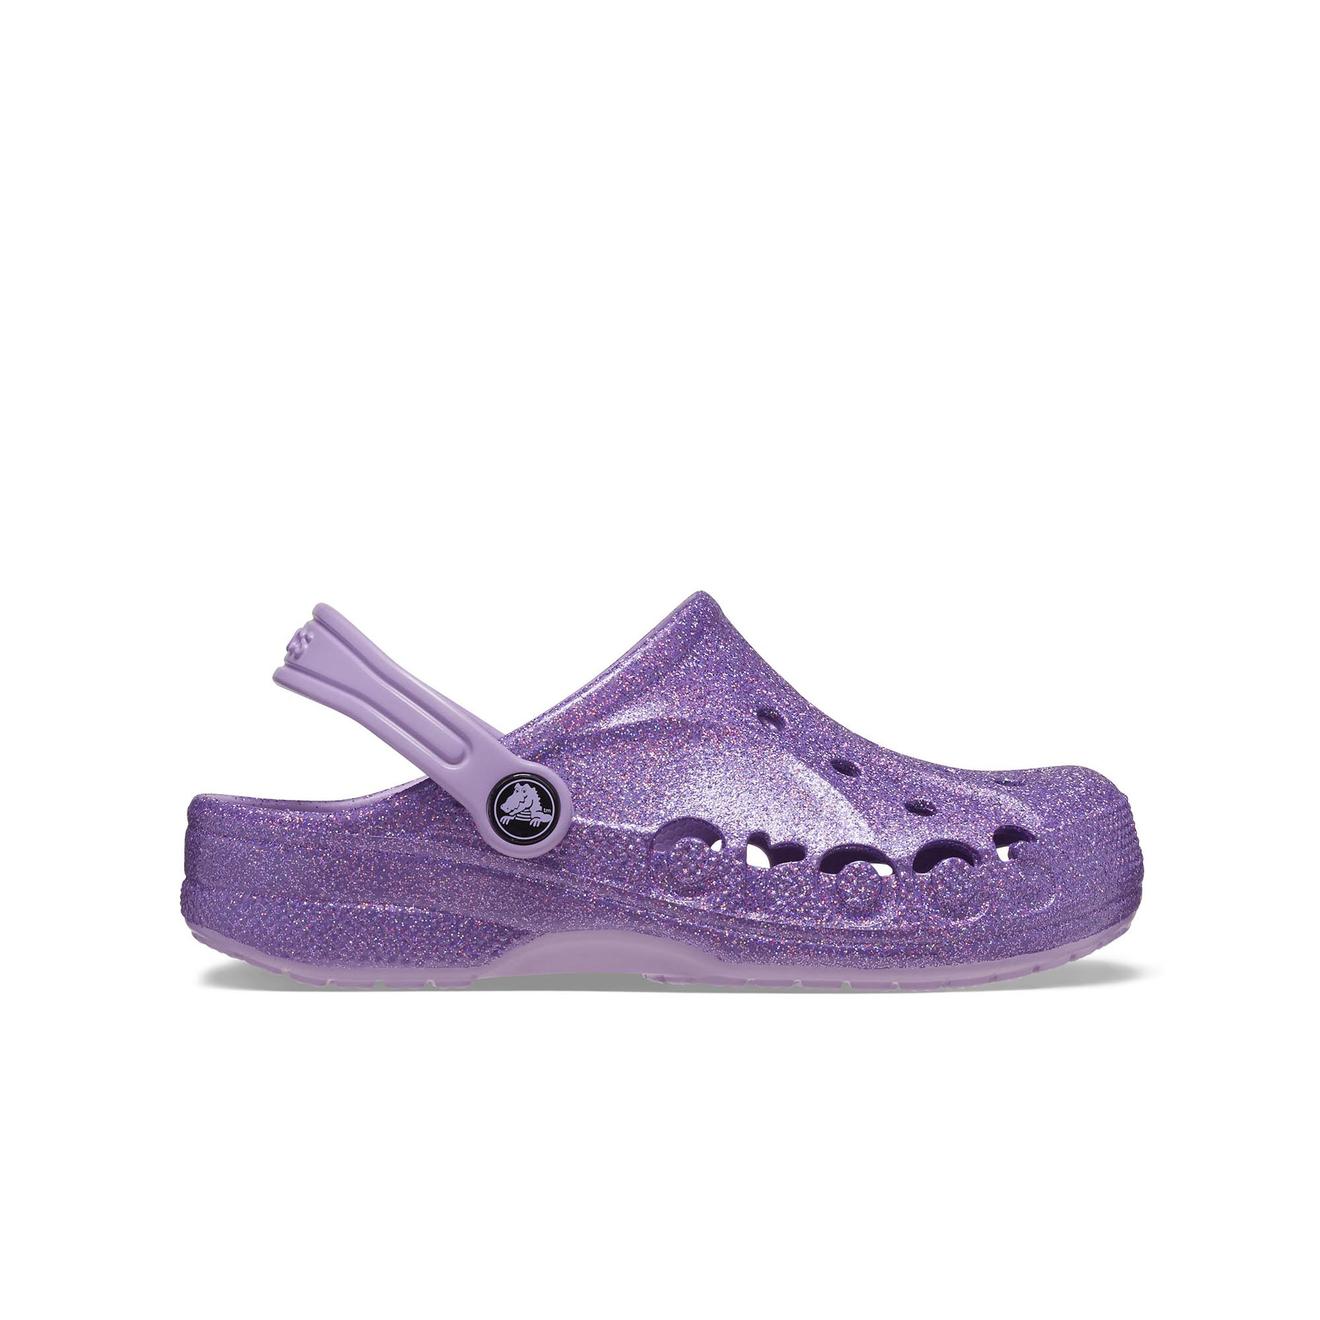 Oferta de Crocs Baya Glitter Clog T por $59999 en Crocs